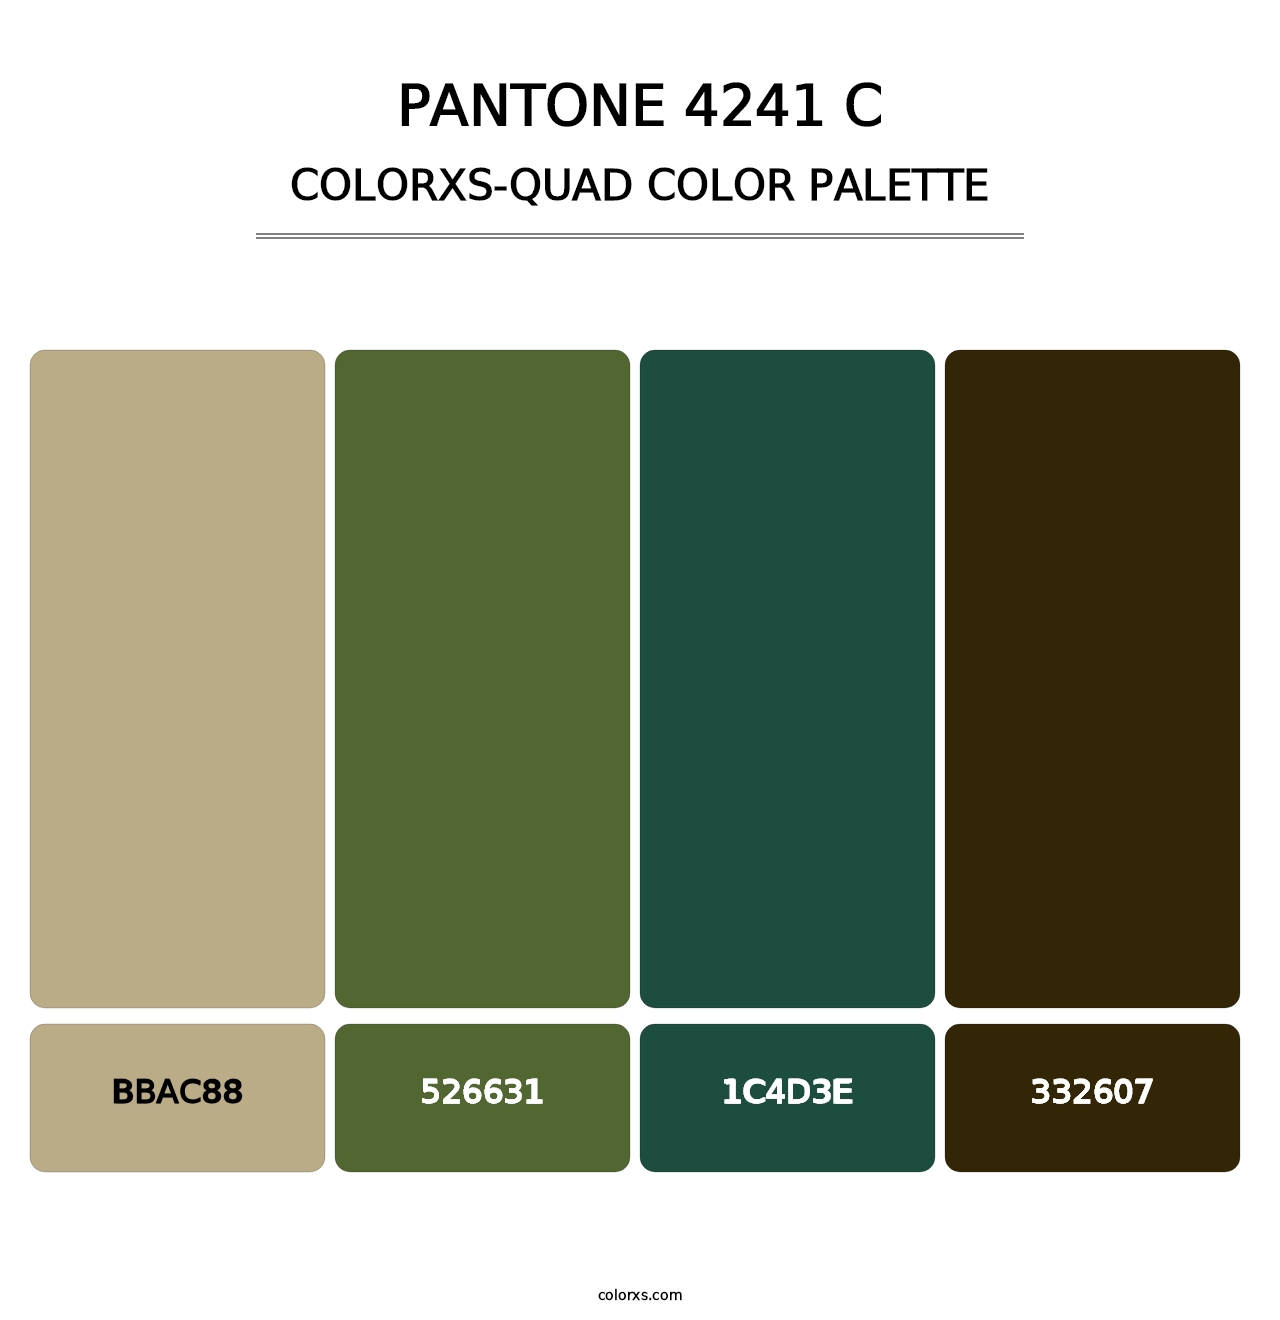 PANTONE 4241 C - Colorxs Quad Palette